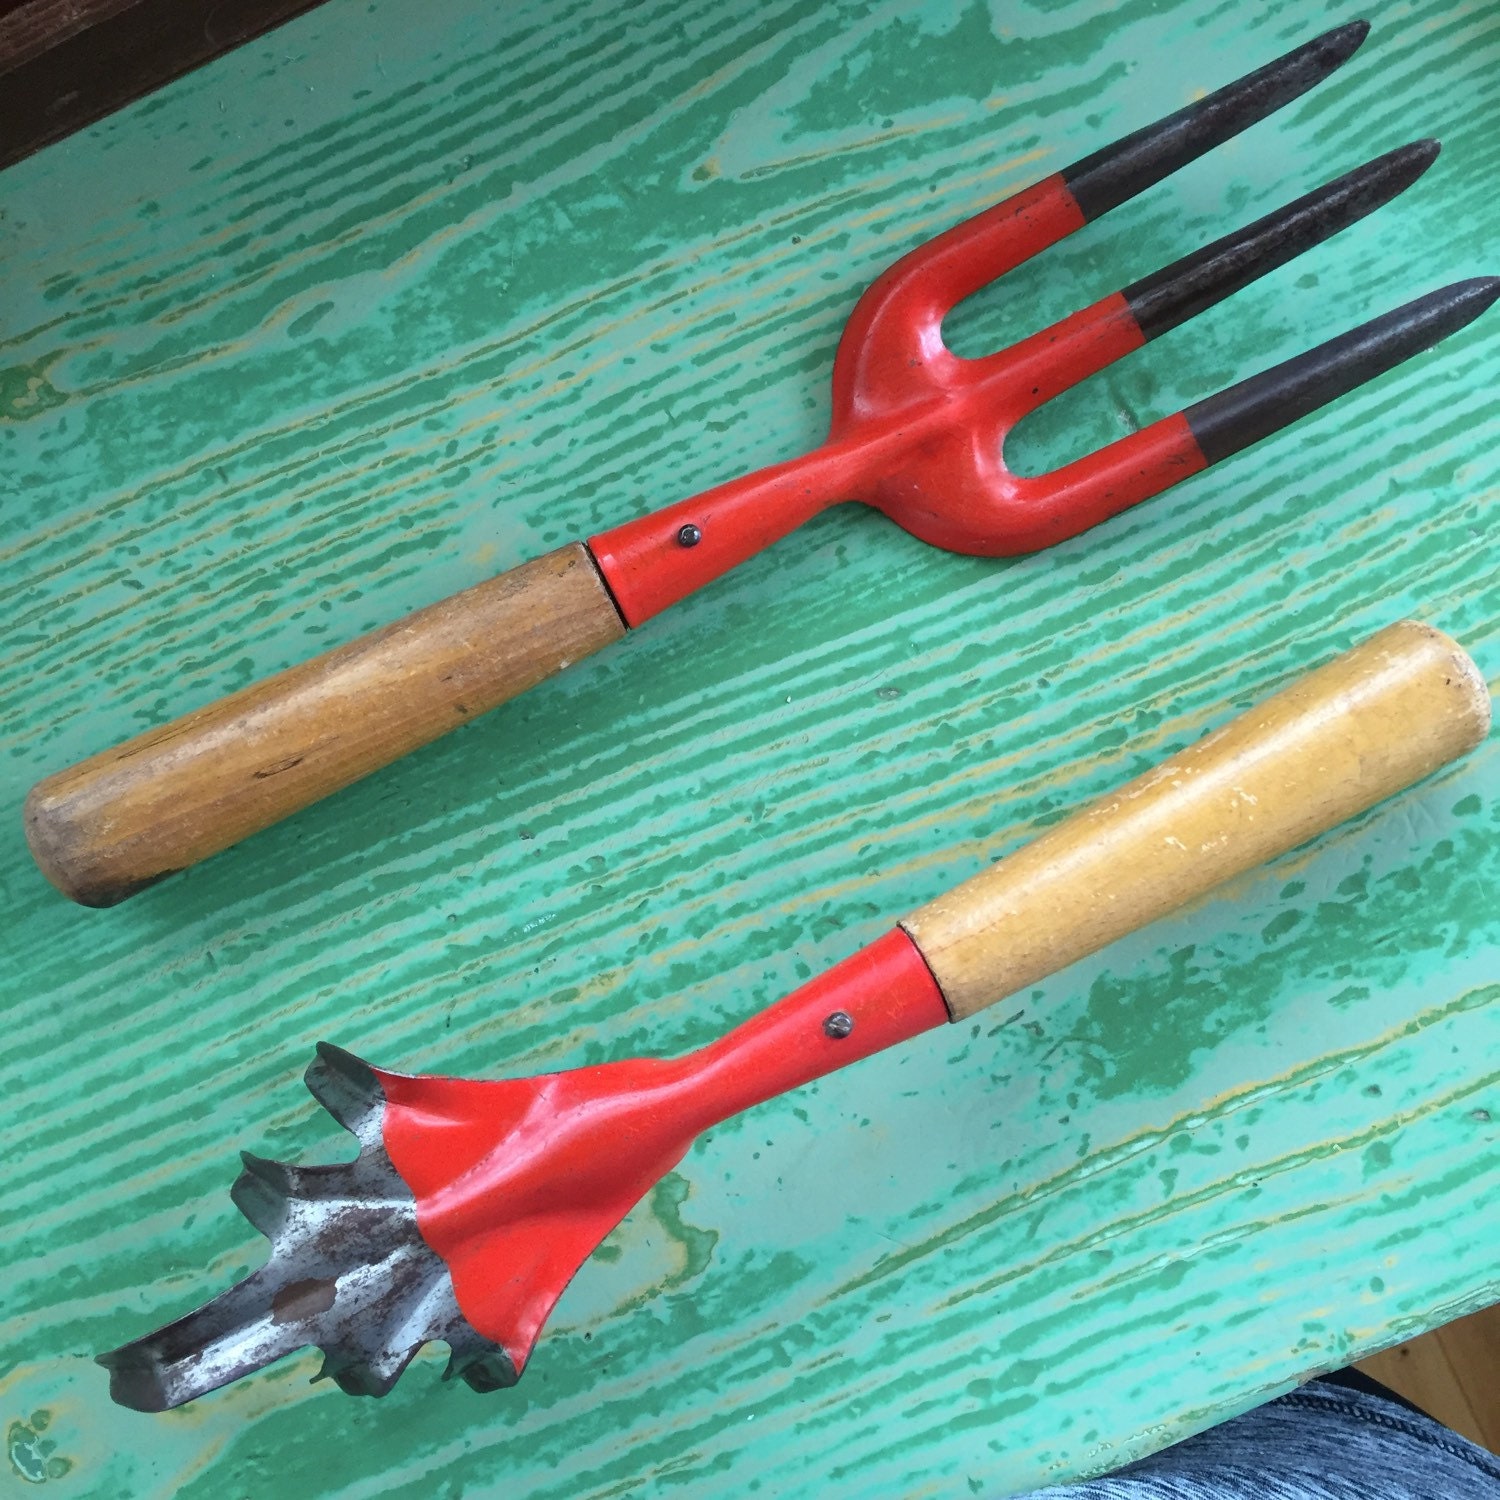 Vintage Garden Hand Tools Gardening Tools 2 Piece Set